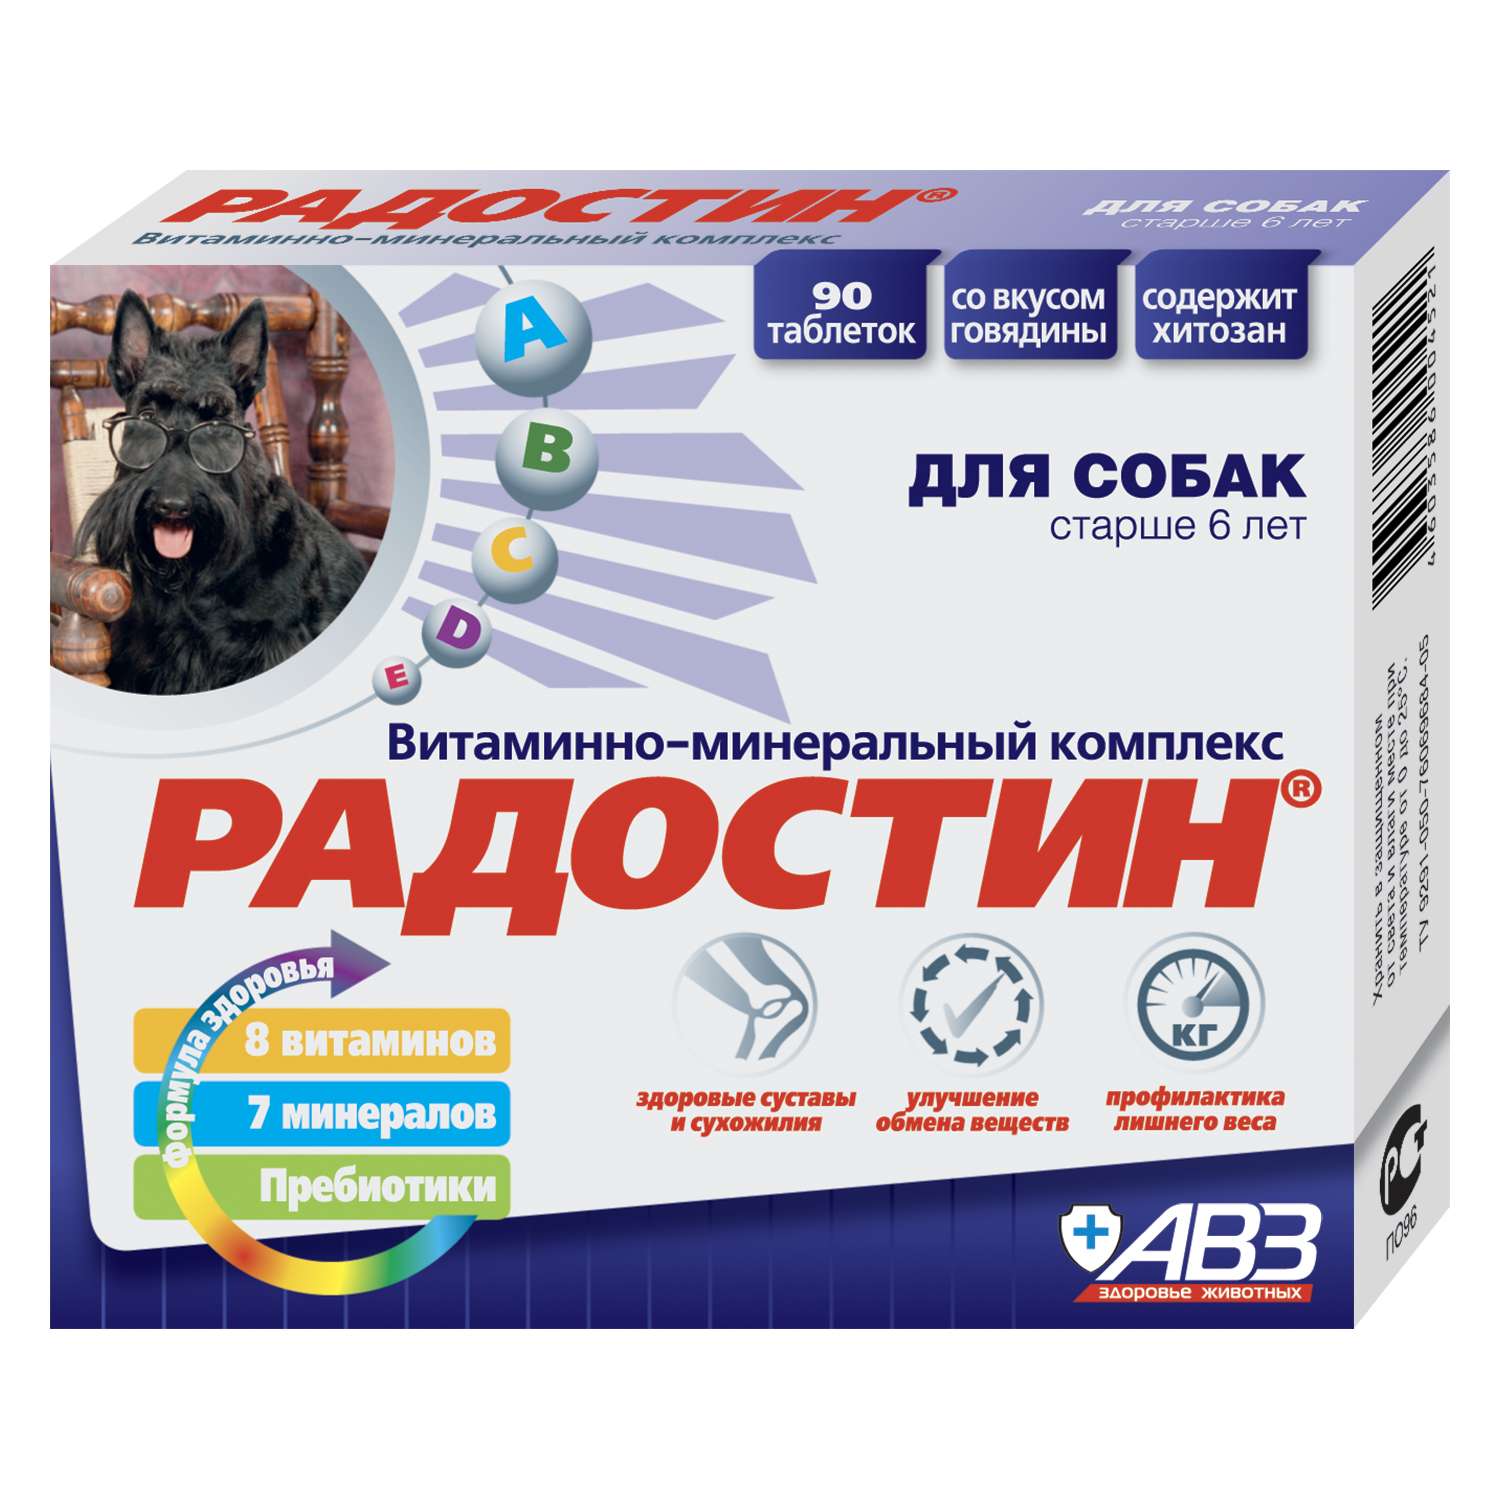 Пищевая добавка для собак Радостин пожилых витаминно-минеральная 90таблеток 03963 - фото 1